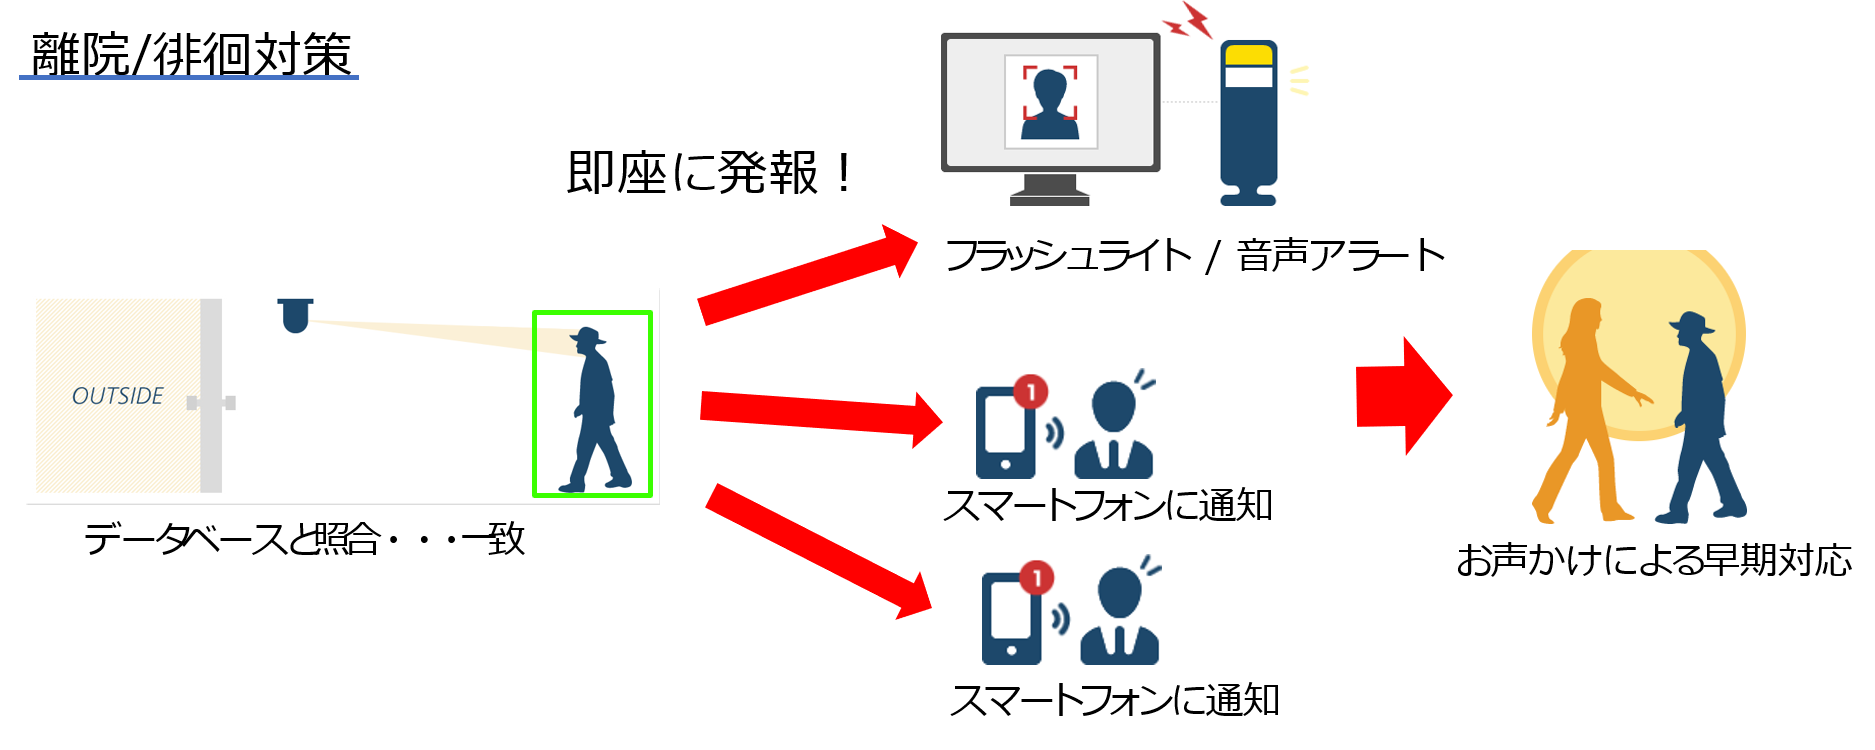 顔認証システムの運用例